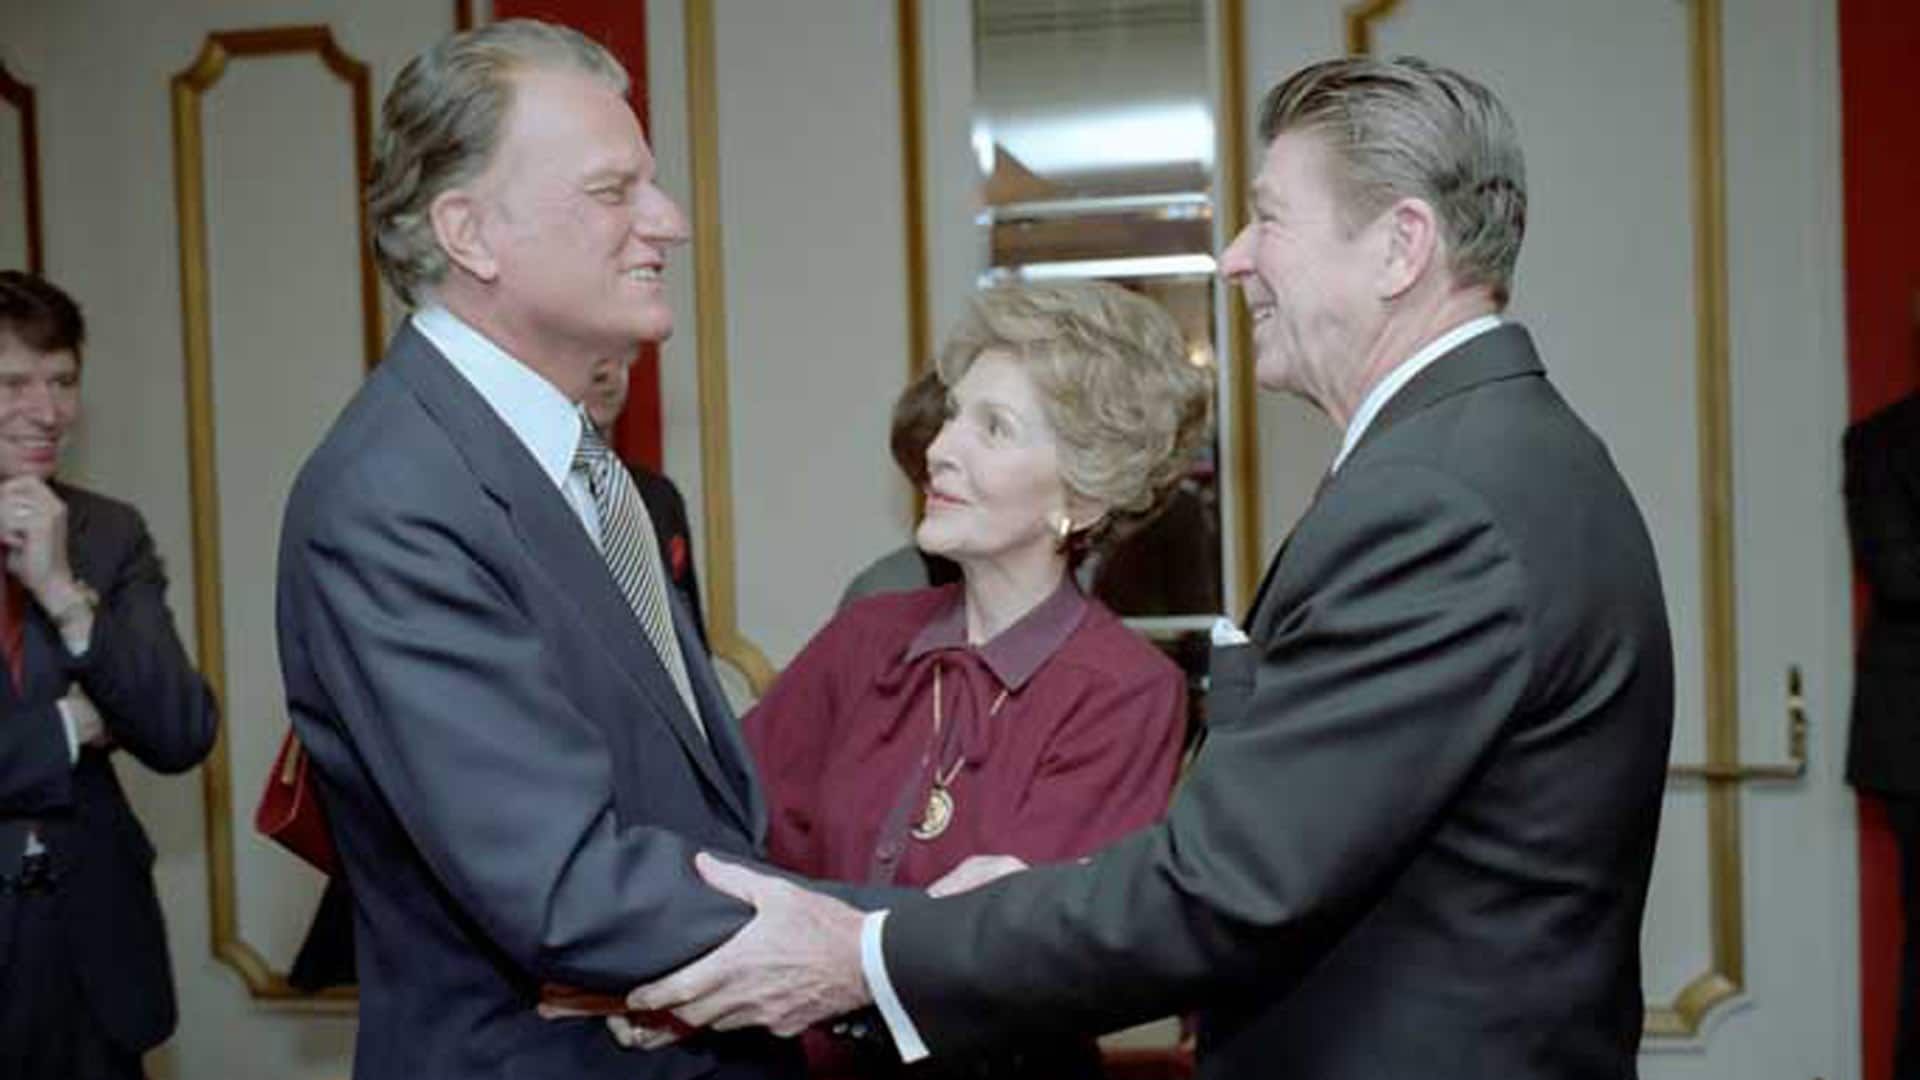 Ein Film über Billy Graham wird am 8. November erstmals auf Bibel TV übertragen. Der amerikanische Prediger gilt als Evangelist der Präsidenten, hier mit dem Ehepaar Reagan.